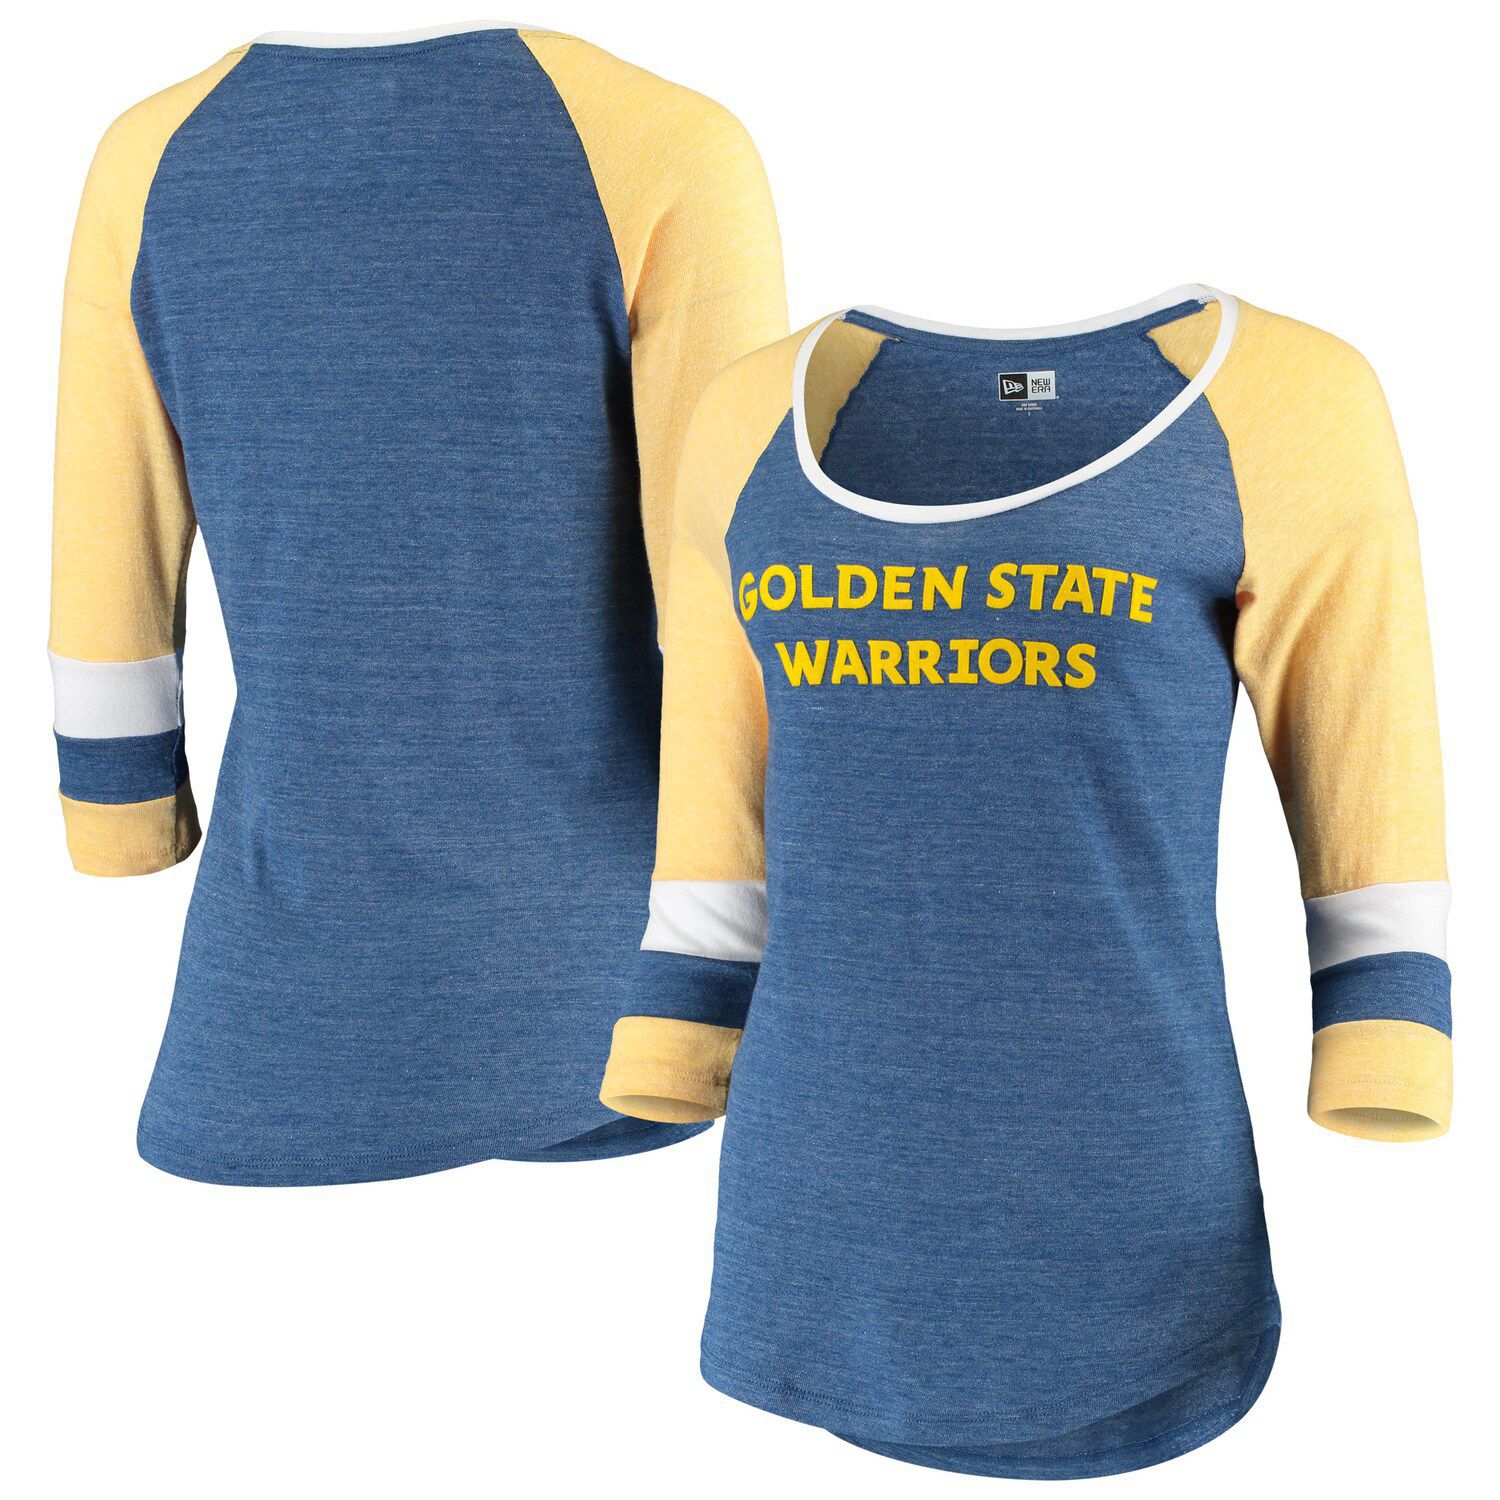 golden state warriors women's jersey